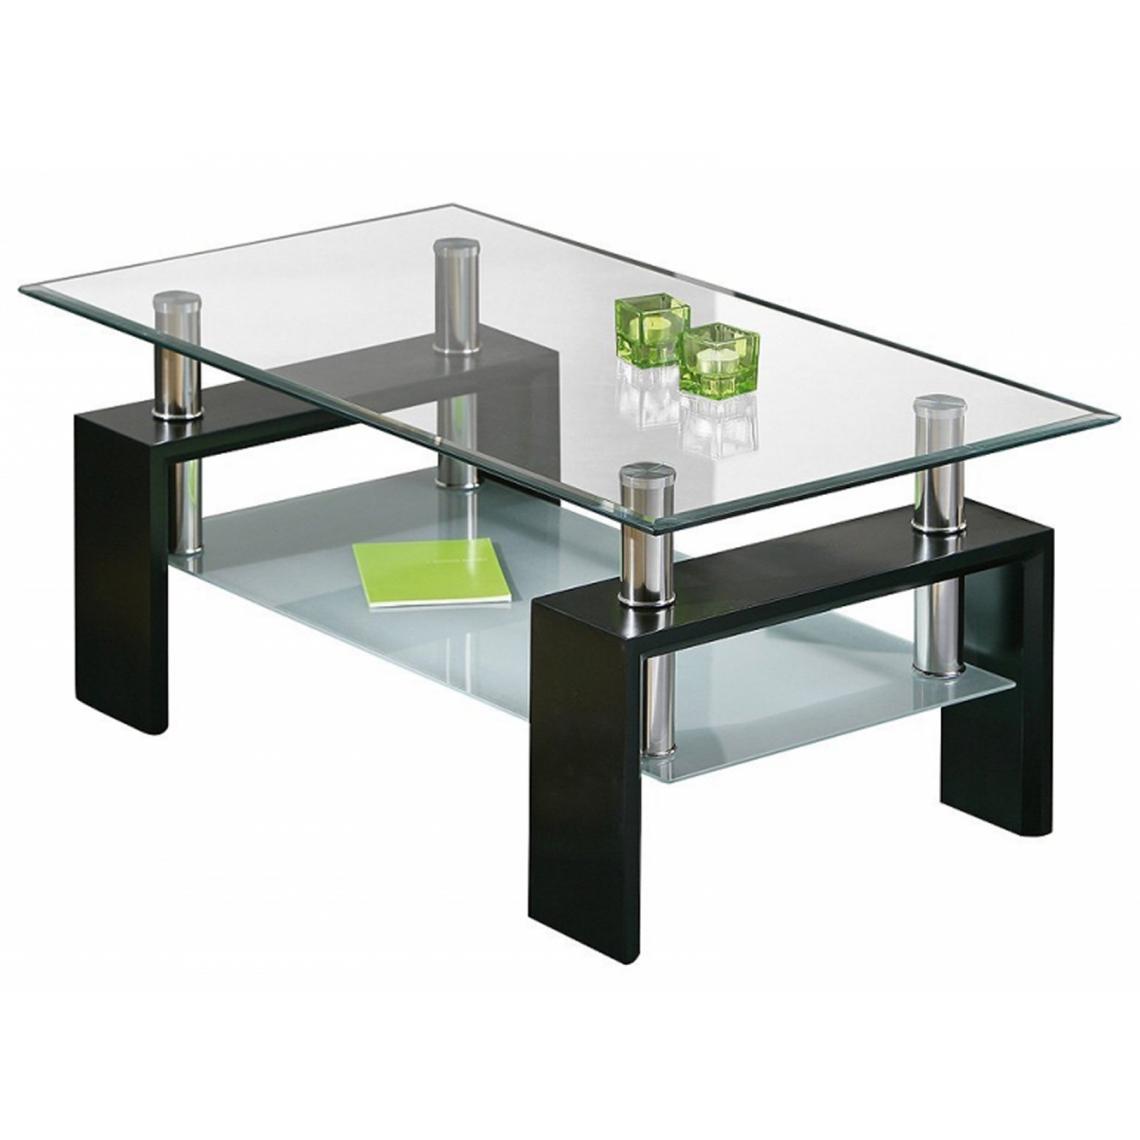 Pegane - Table basse en chrome et verre de sécurit noir - Dim : L100 x H60 x P45 cm - Tables basses